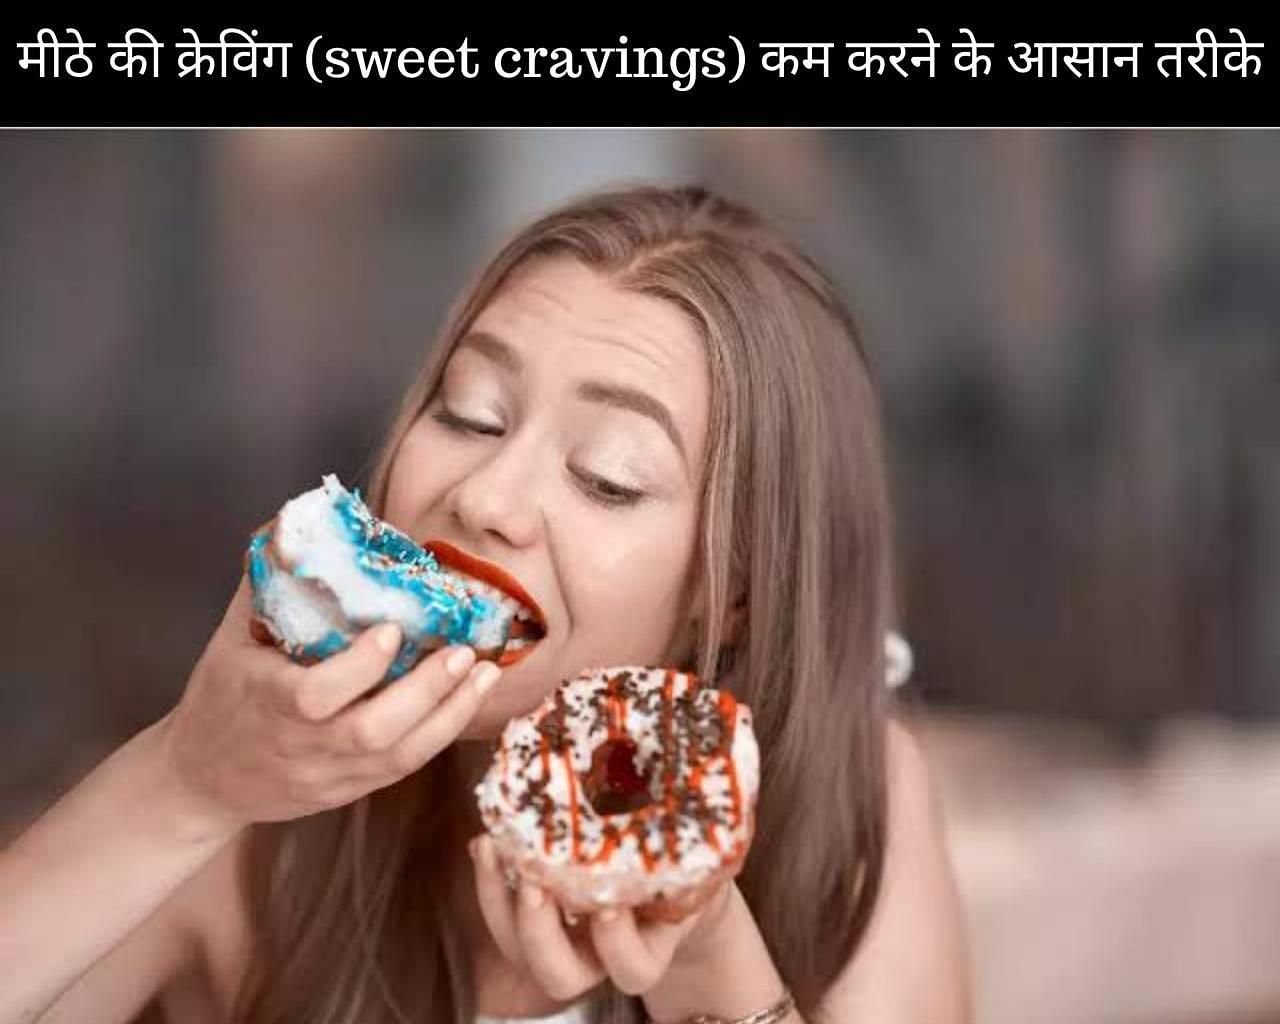 मीठे की क्रेविंग (sweet cravings) कम करने के 10 आसान तरीके (फोटो - sportskeedaहिन्दी)